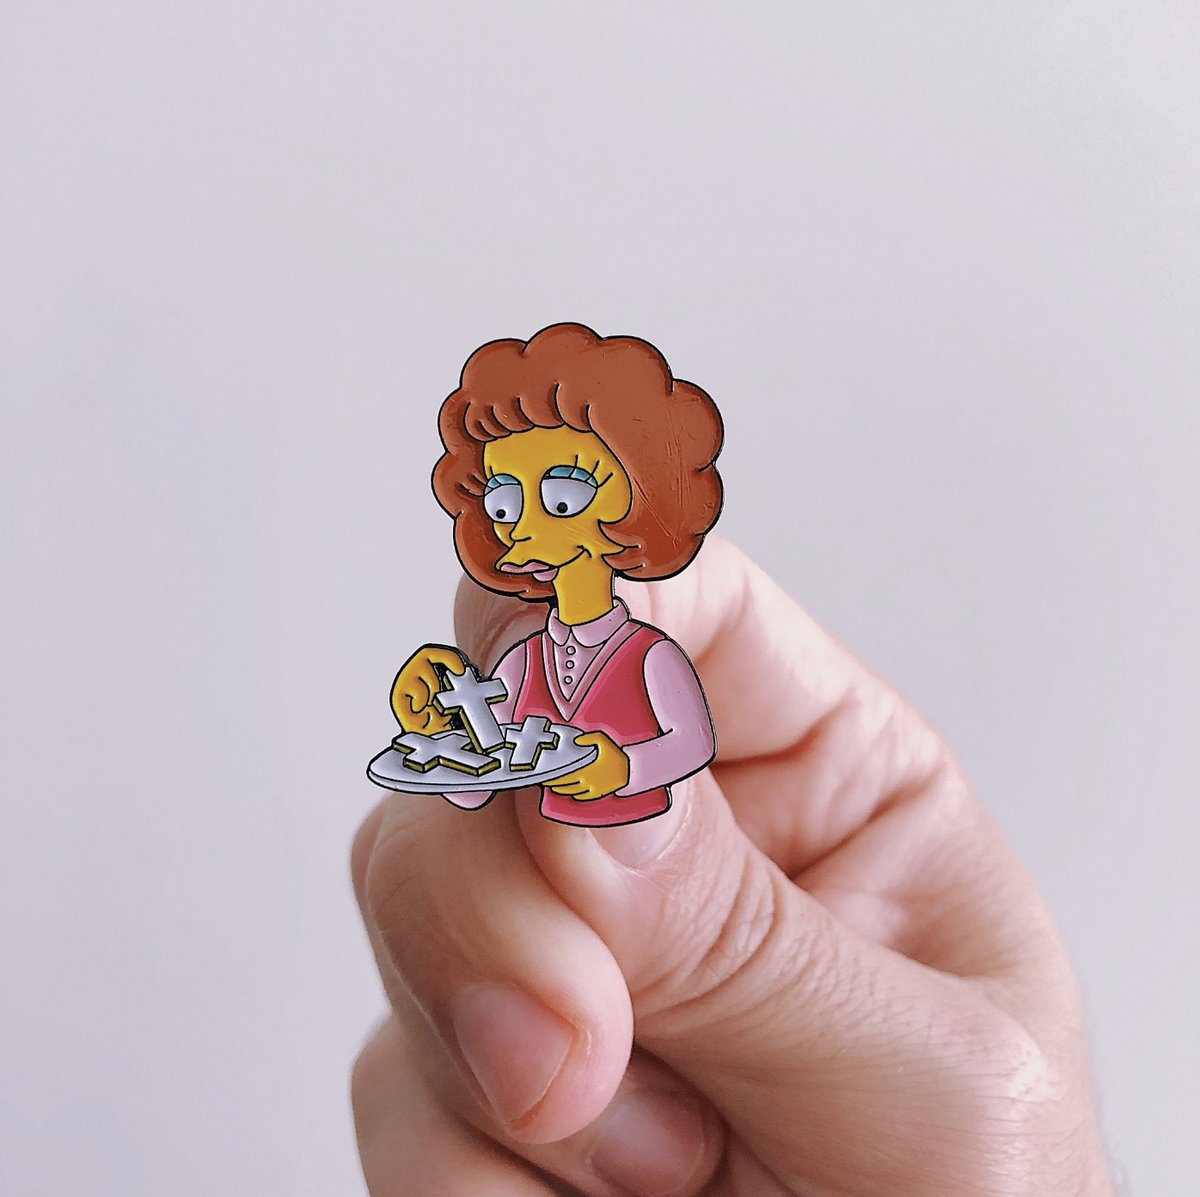 ¡Nergasmo! Conoce la colección de pines de Los Simpsons más genial del mundo